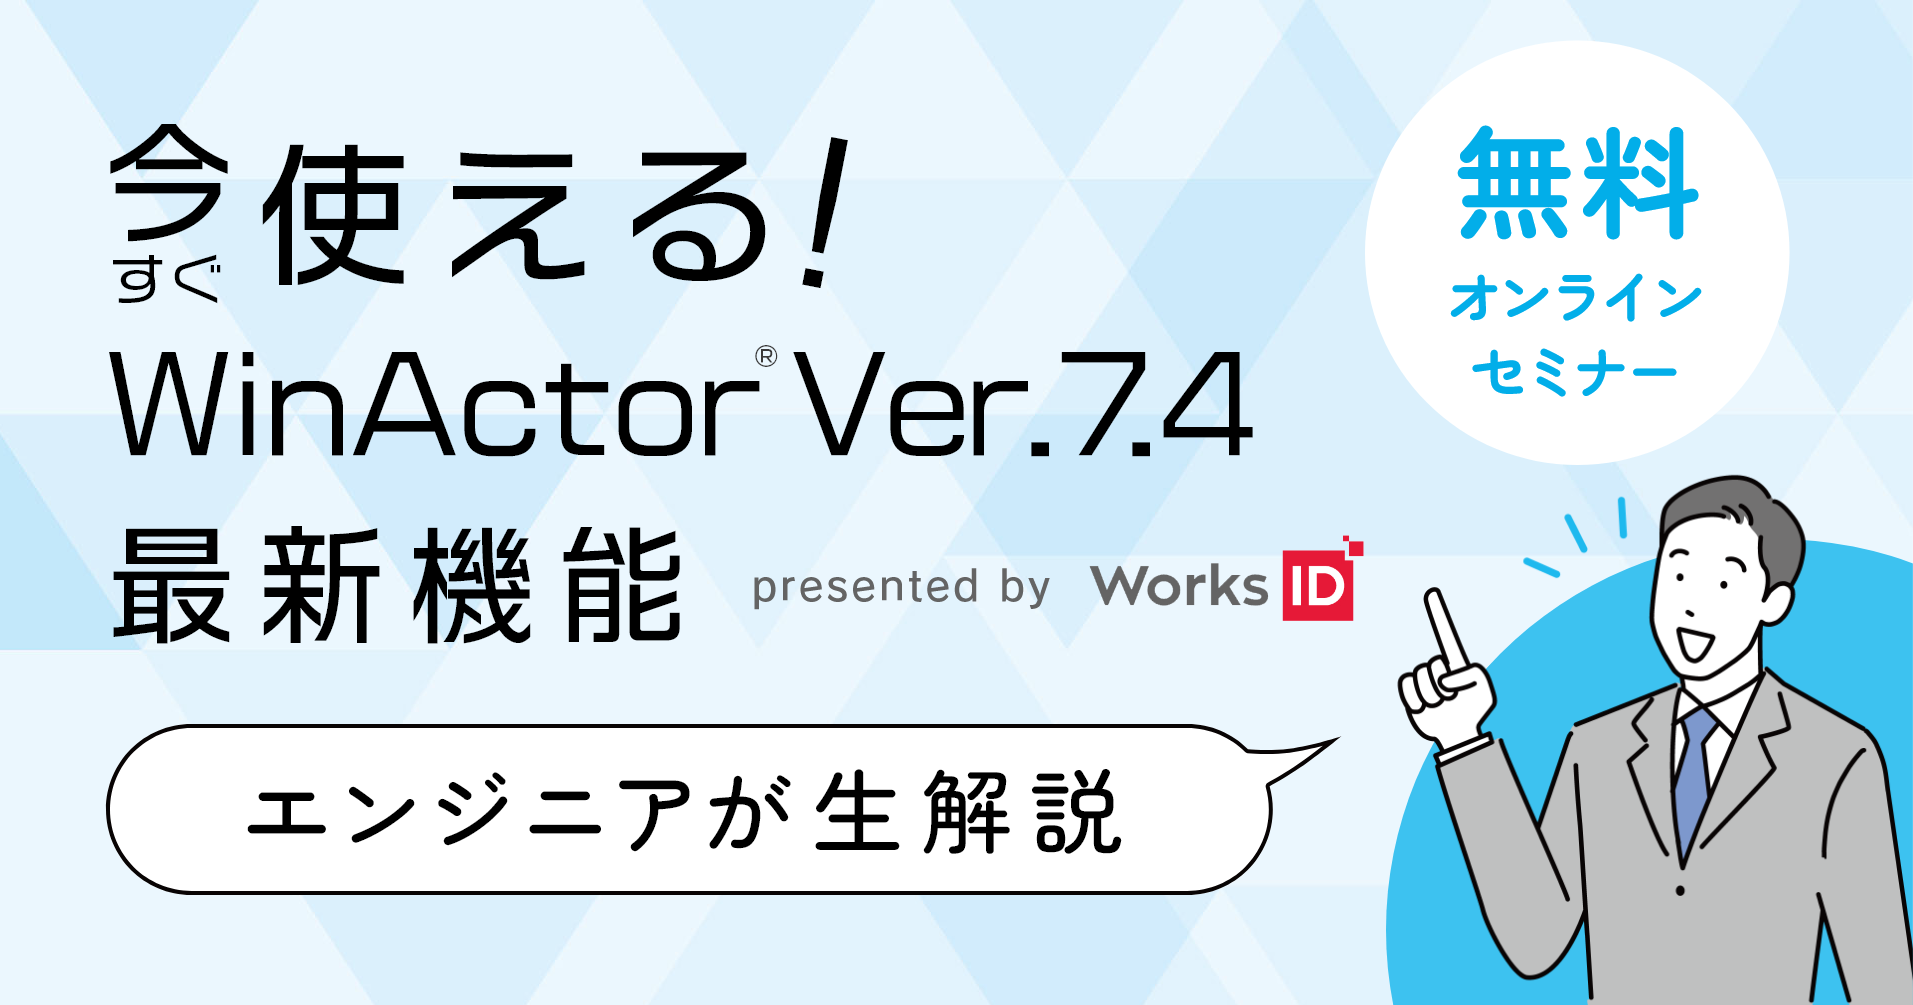 今すぐ使える！WinActor【Ver.7.4】最新機能ウェビナー開催 ～エンジニアが生解説！～
